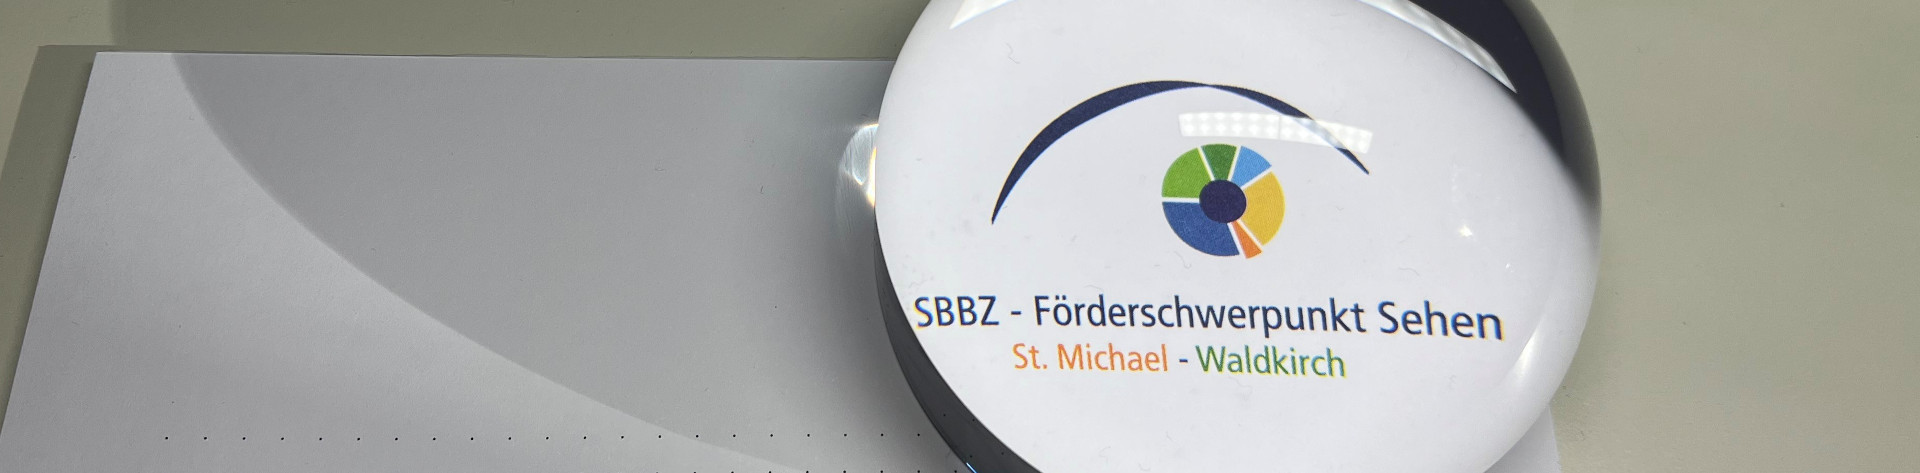 Eine runde Visolettlupe vergrößert das Logo des SBBZ.